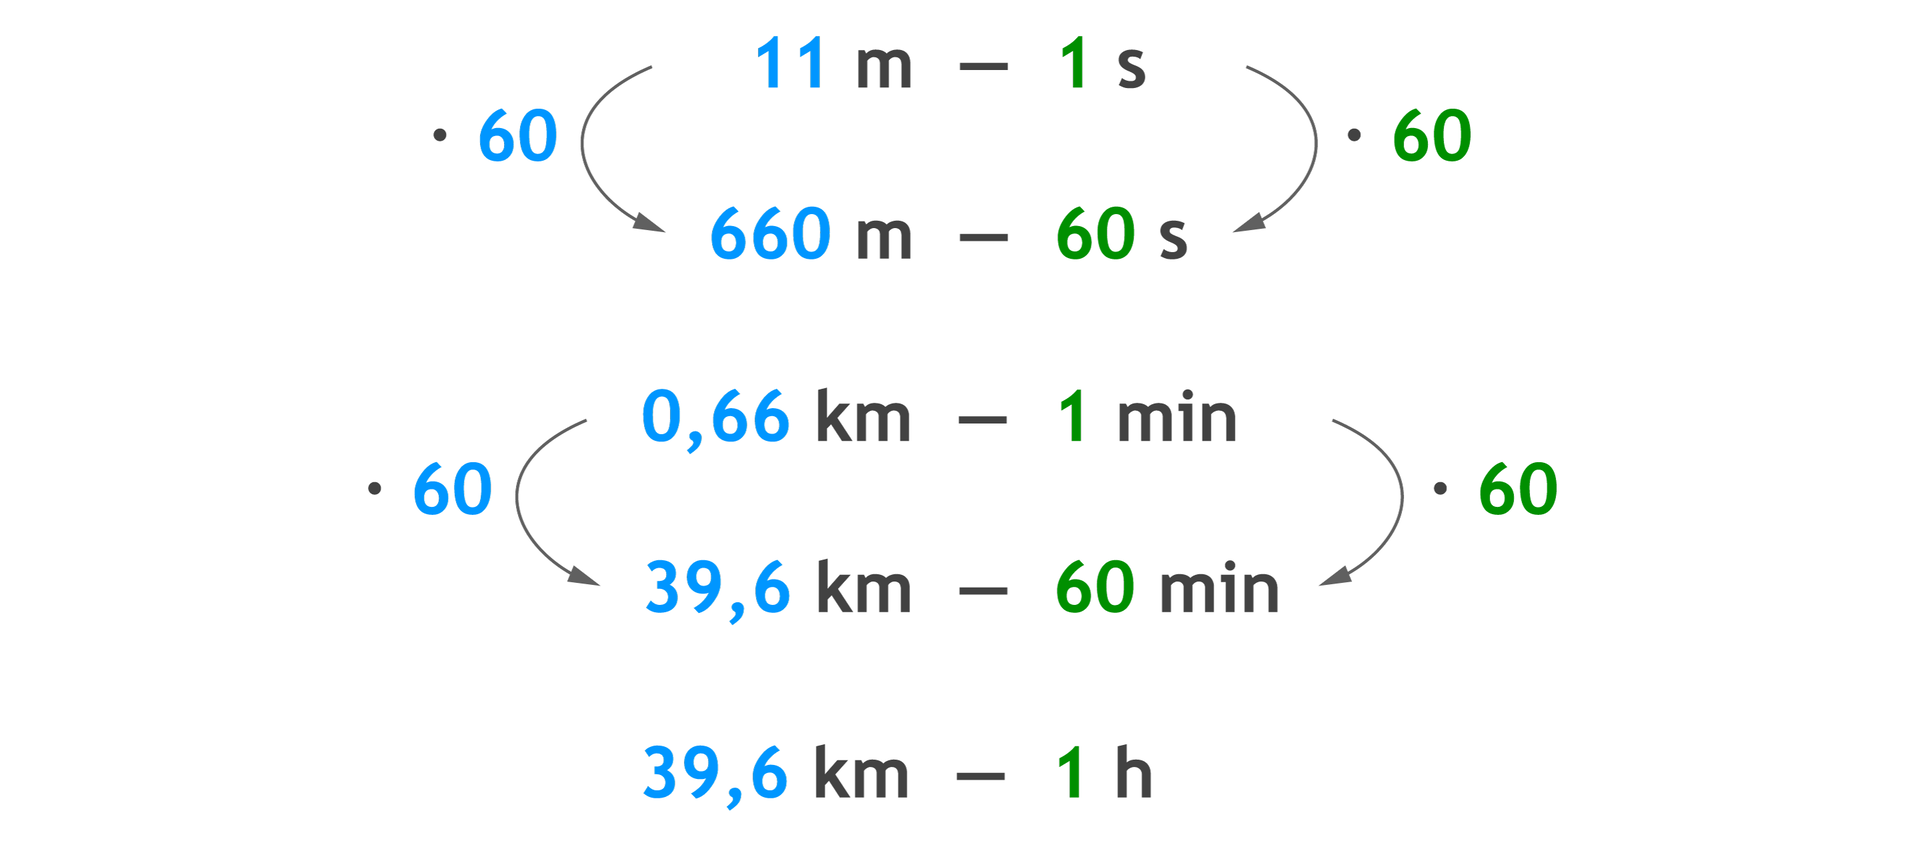 Zapis proporcji: 11 m – 1 s i poniżej 660 – 60 s. 11 m razy 60 =660 m i 1 s razy 60 =60 s. Proporcja: 0,66 km – 1 min i poniżej 39,6 km – 60 min. 0,66 km razy 60 = 39,60 km i 1 min razy 60 =60 min. 39,6 km – 1 h.